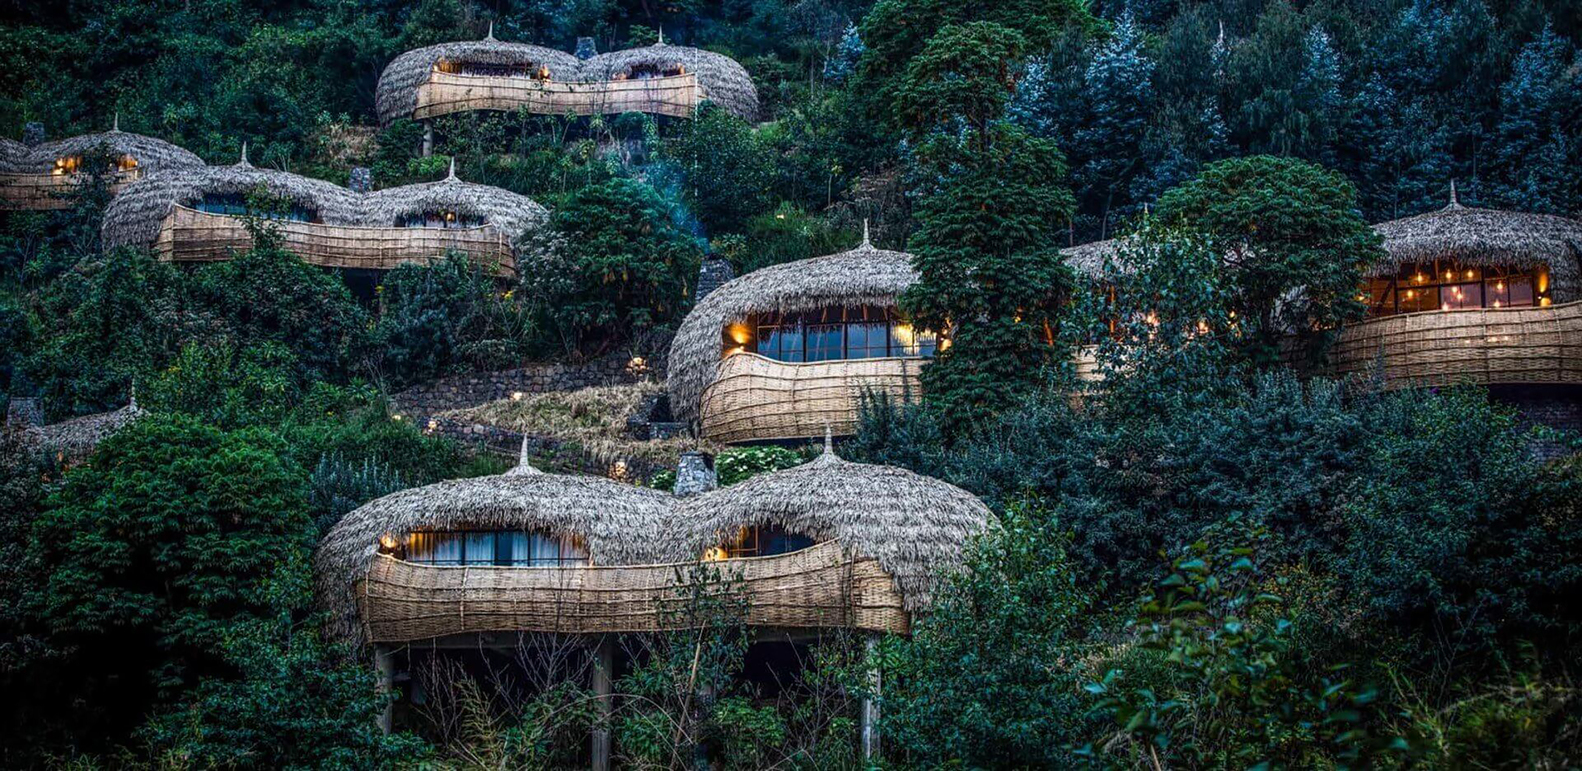 Hình ảnh toàn cảnh nhà nghỉ dưỡng độc đáo ở châu Phi với mái lợp lá, xung quanh là rừng xanh